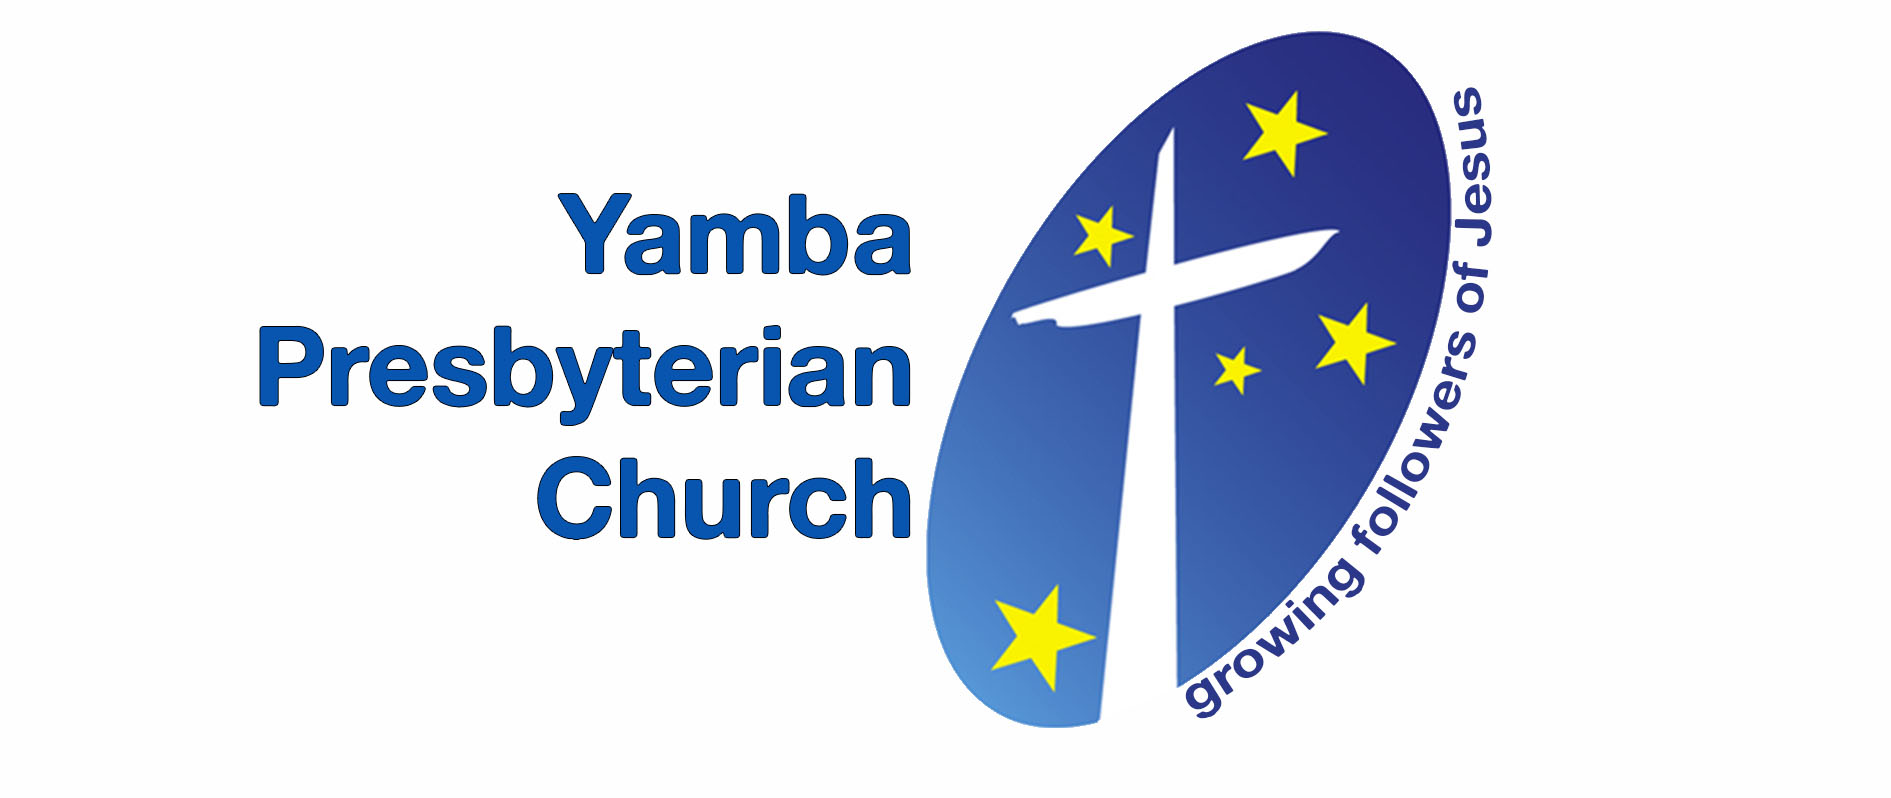 Yamba Presbyterian Church